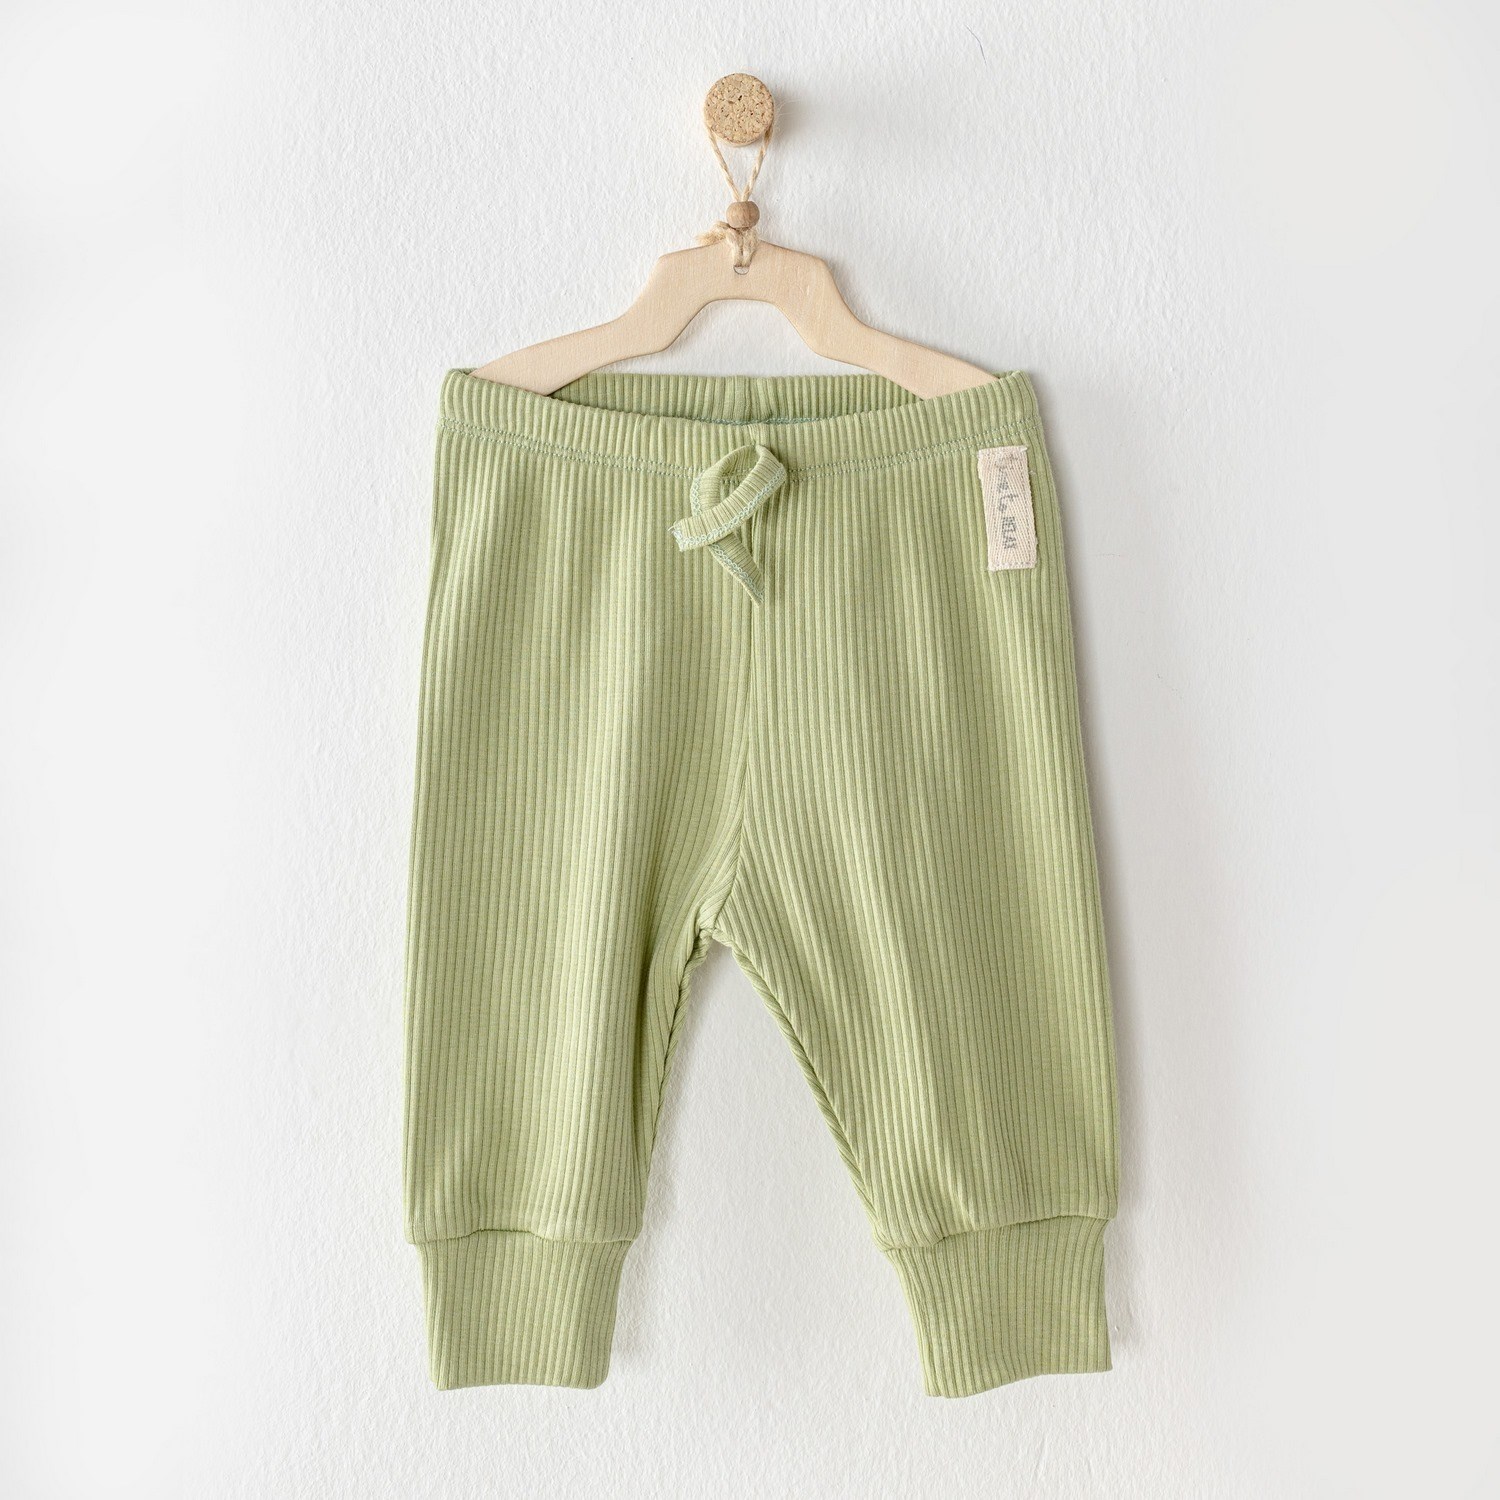 Andywawa Modal Bebek Pantolunu AC23658 Yeşil